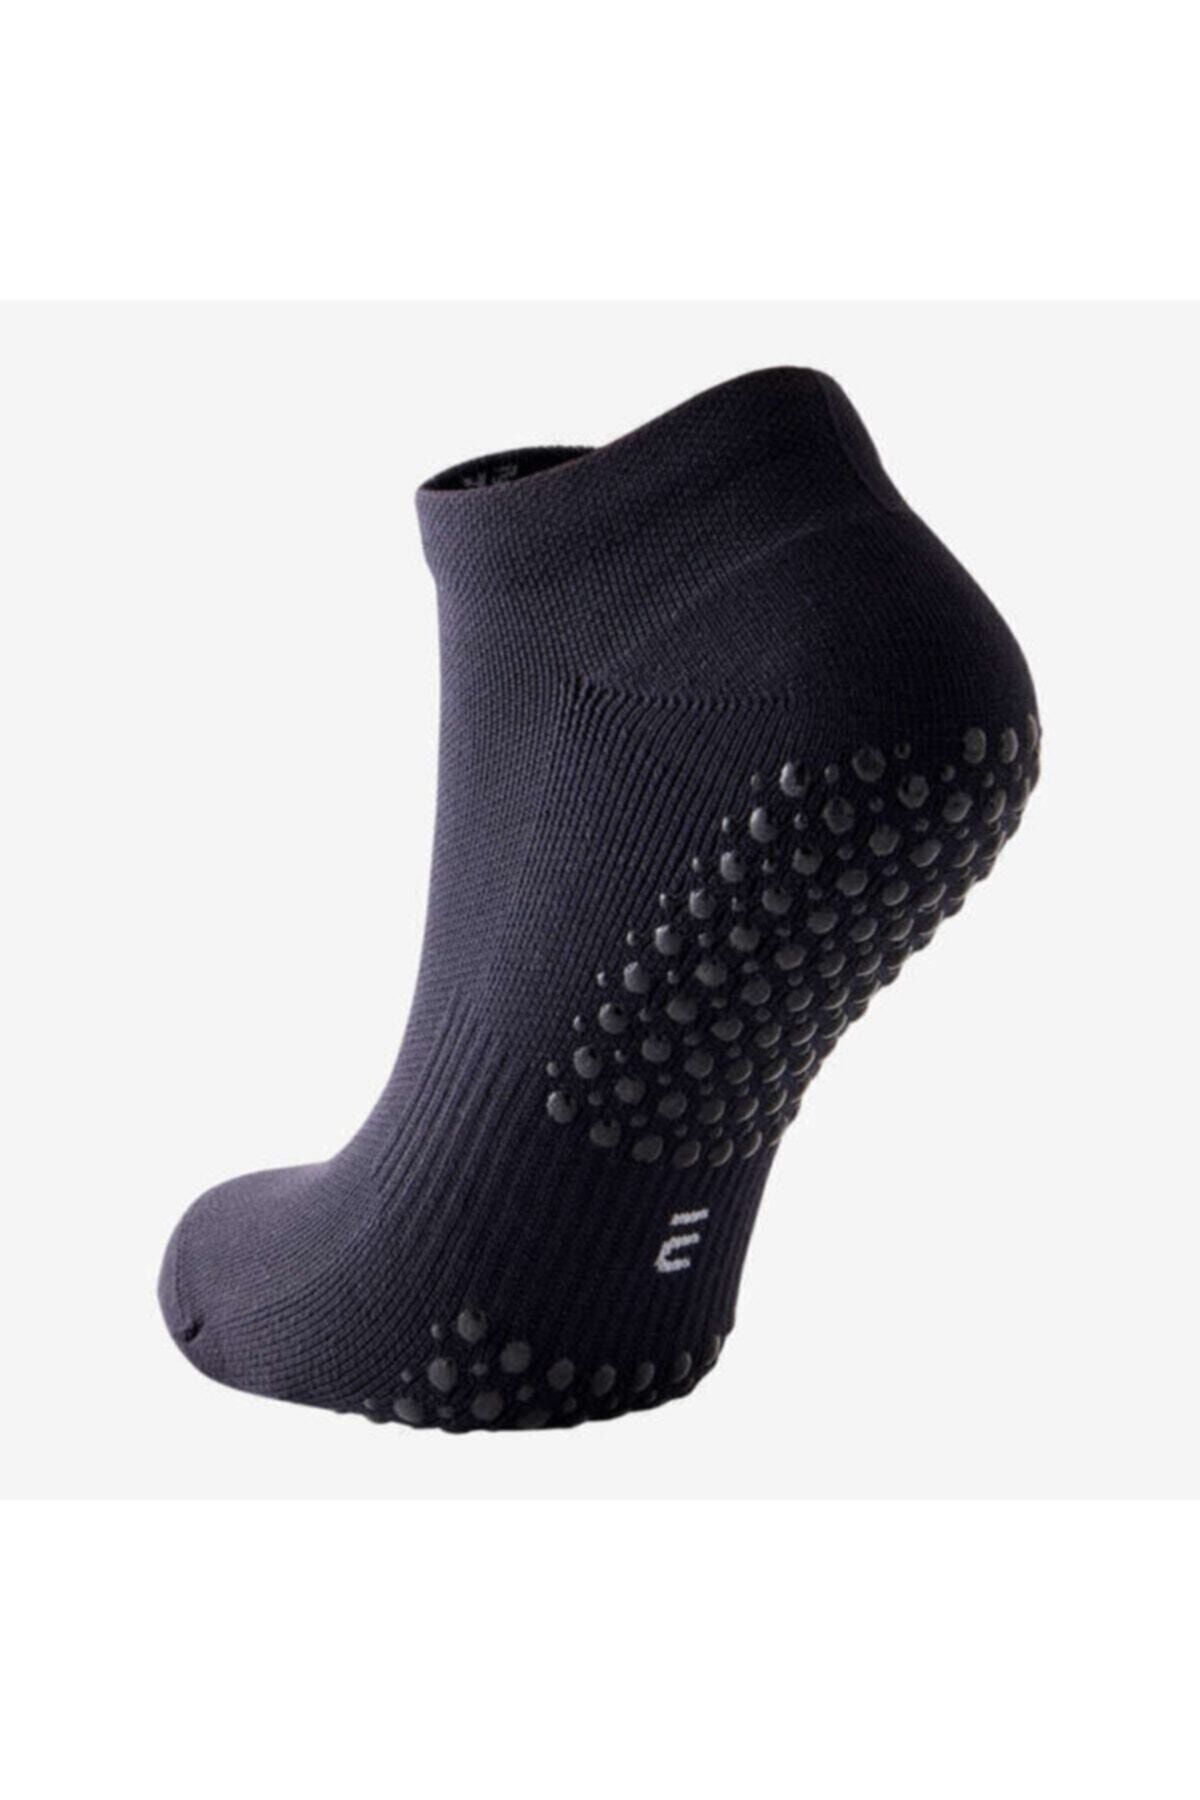 Decathlon - Kaymaz Tabanlı Çorap Unisex Pilates Çorabı , Yoga Çorabı , Fitness Çorabı Ve Dans Çorabı